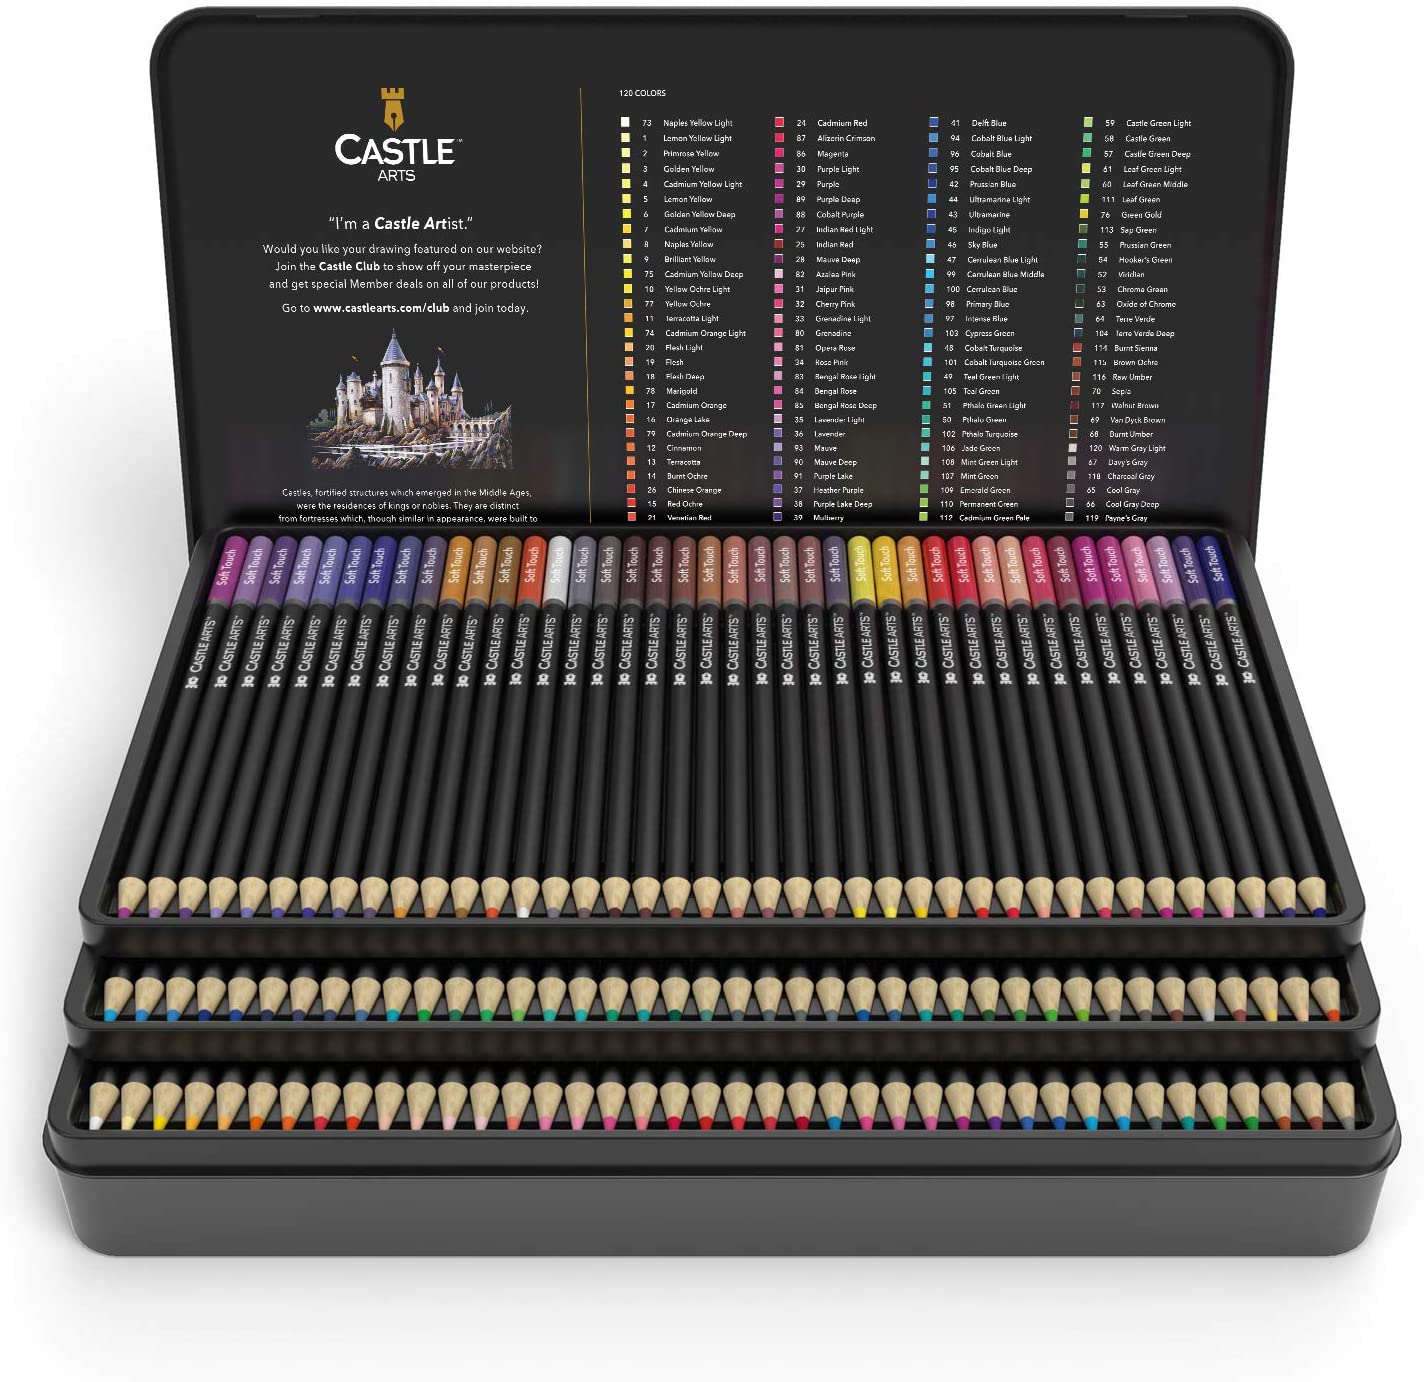 Castle Art Supplies set of 120 Colored Pencils 